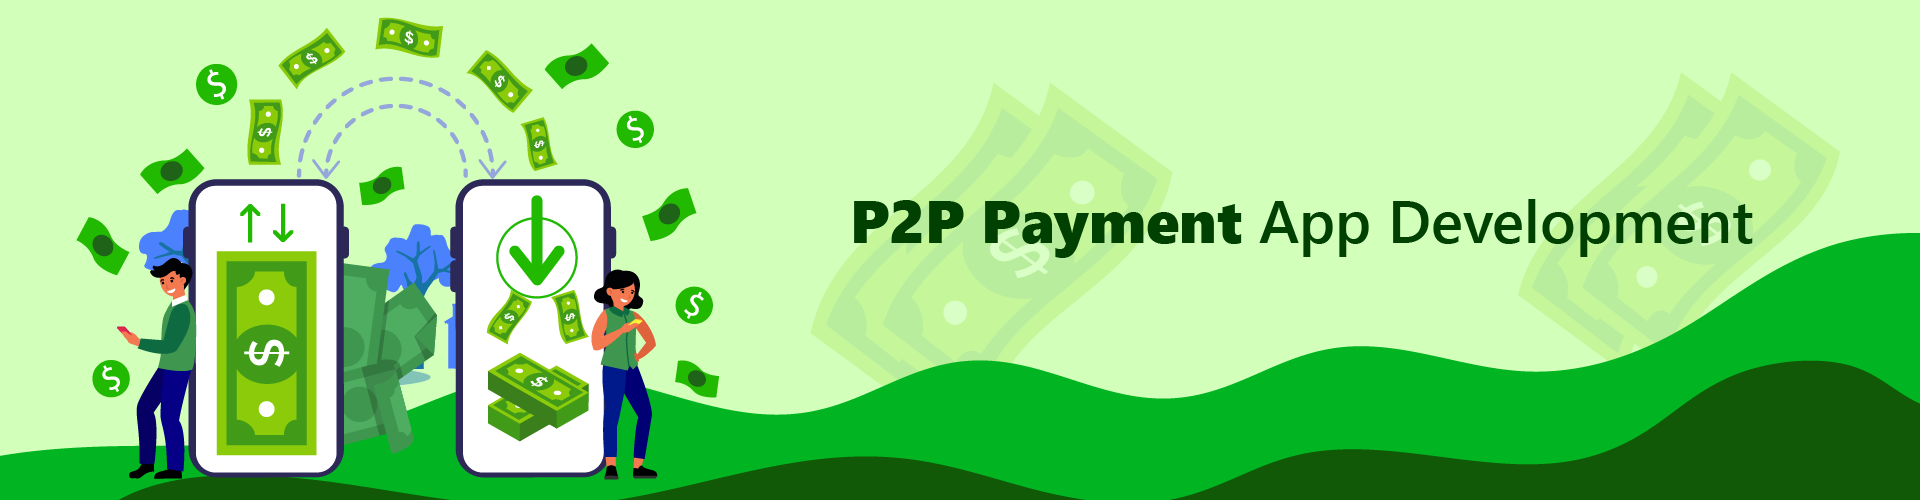 p2p payment app